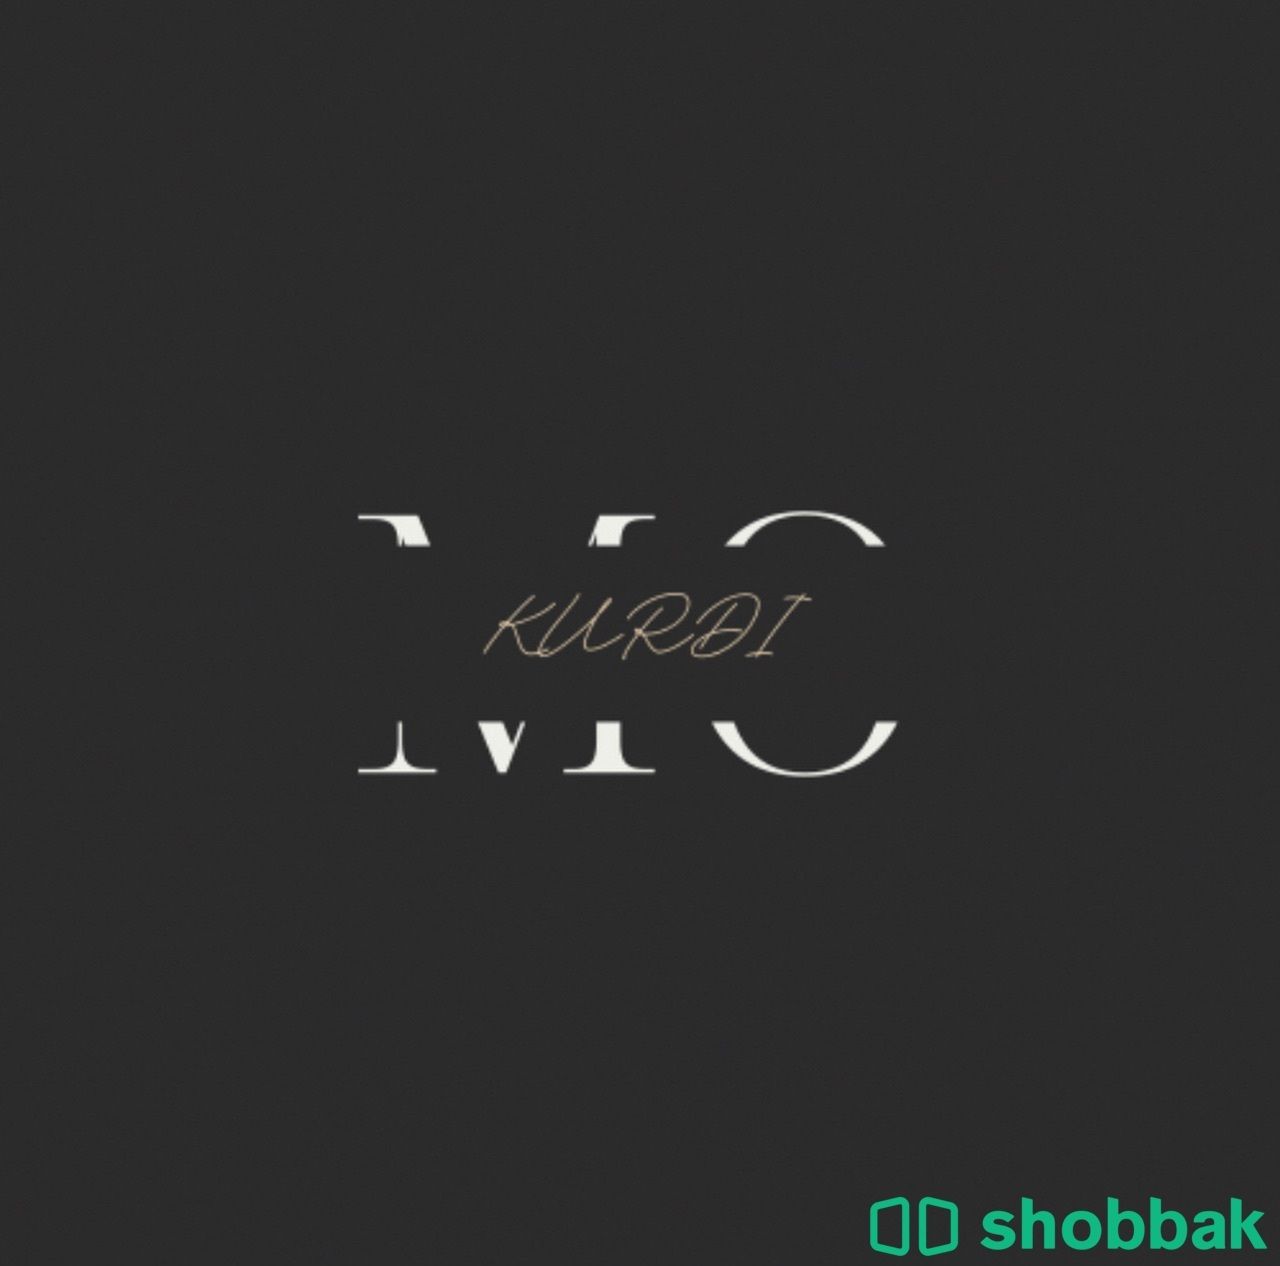 مصمم شعارات و بزنس كارد و اعلانات  Shobbak Saudi Arabia